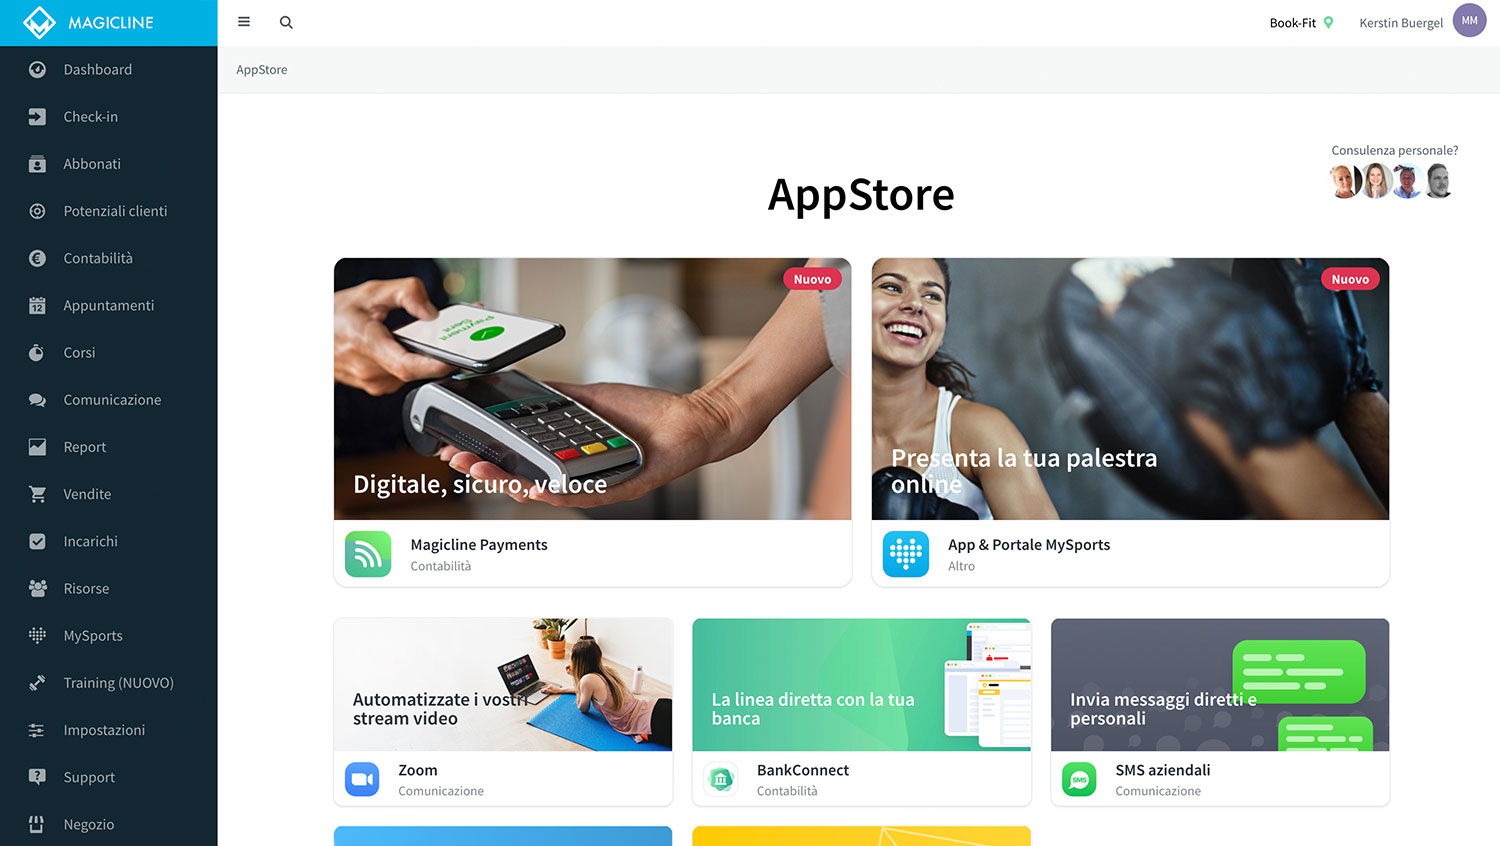 Avvia il processo di attivazione di Magicline Payments nell'App store di Magicline